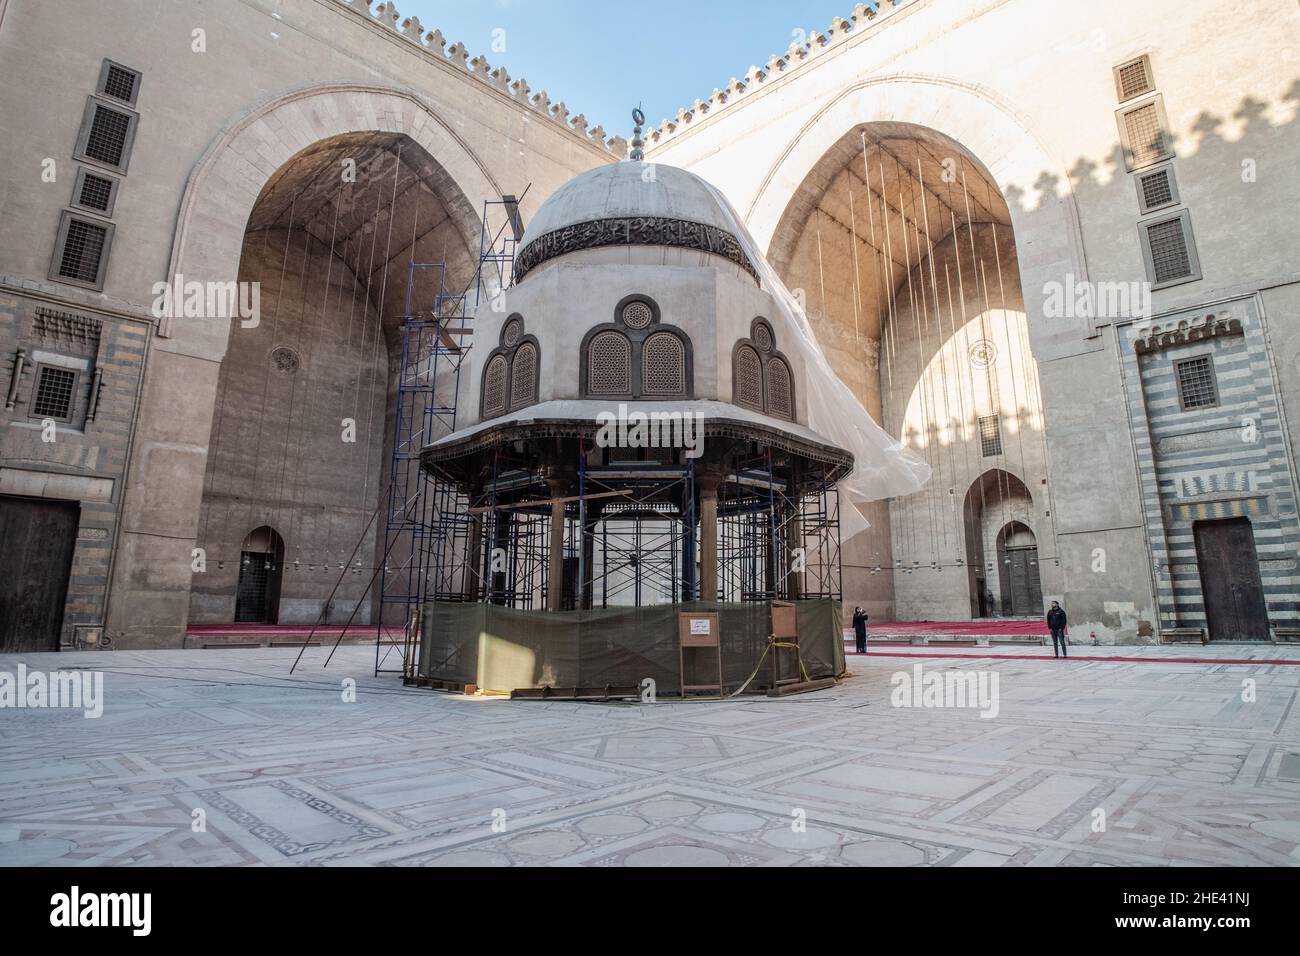 Il cortile centrale e la fontana in fase di riparazione presso la moschea di al-sultan Hassan al Cairo, Egitto. Foto Stock